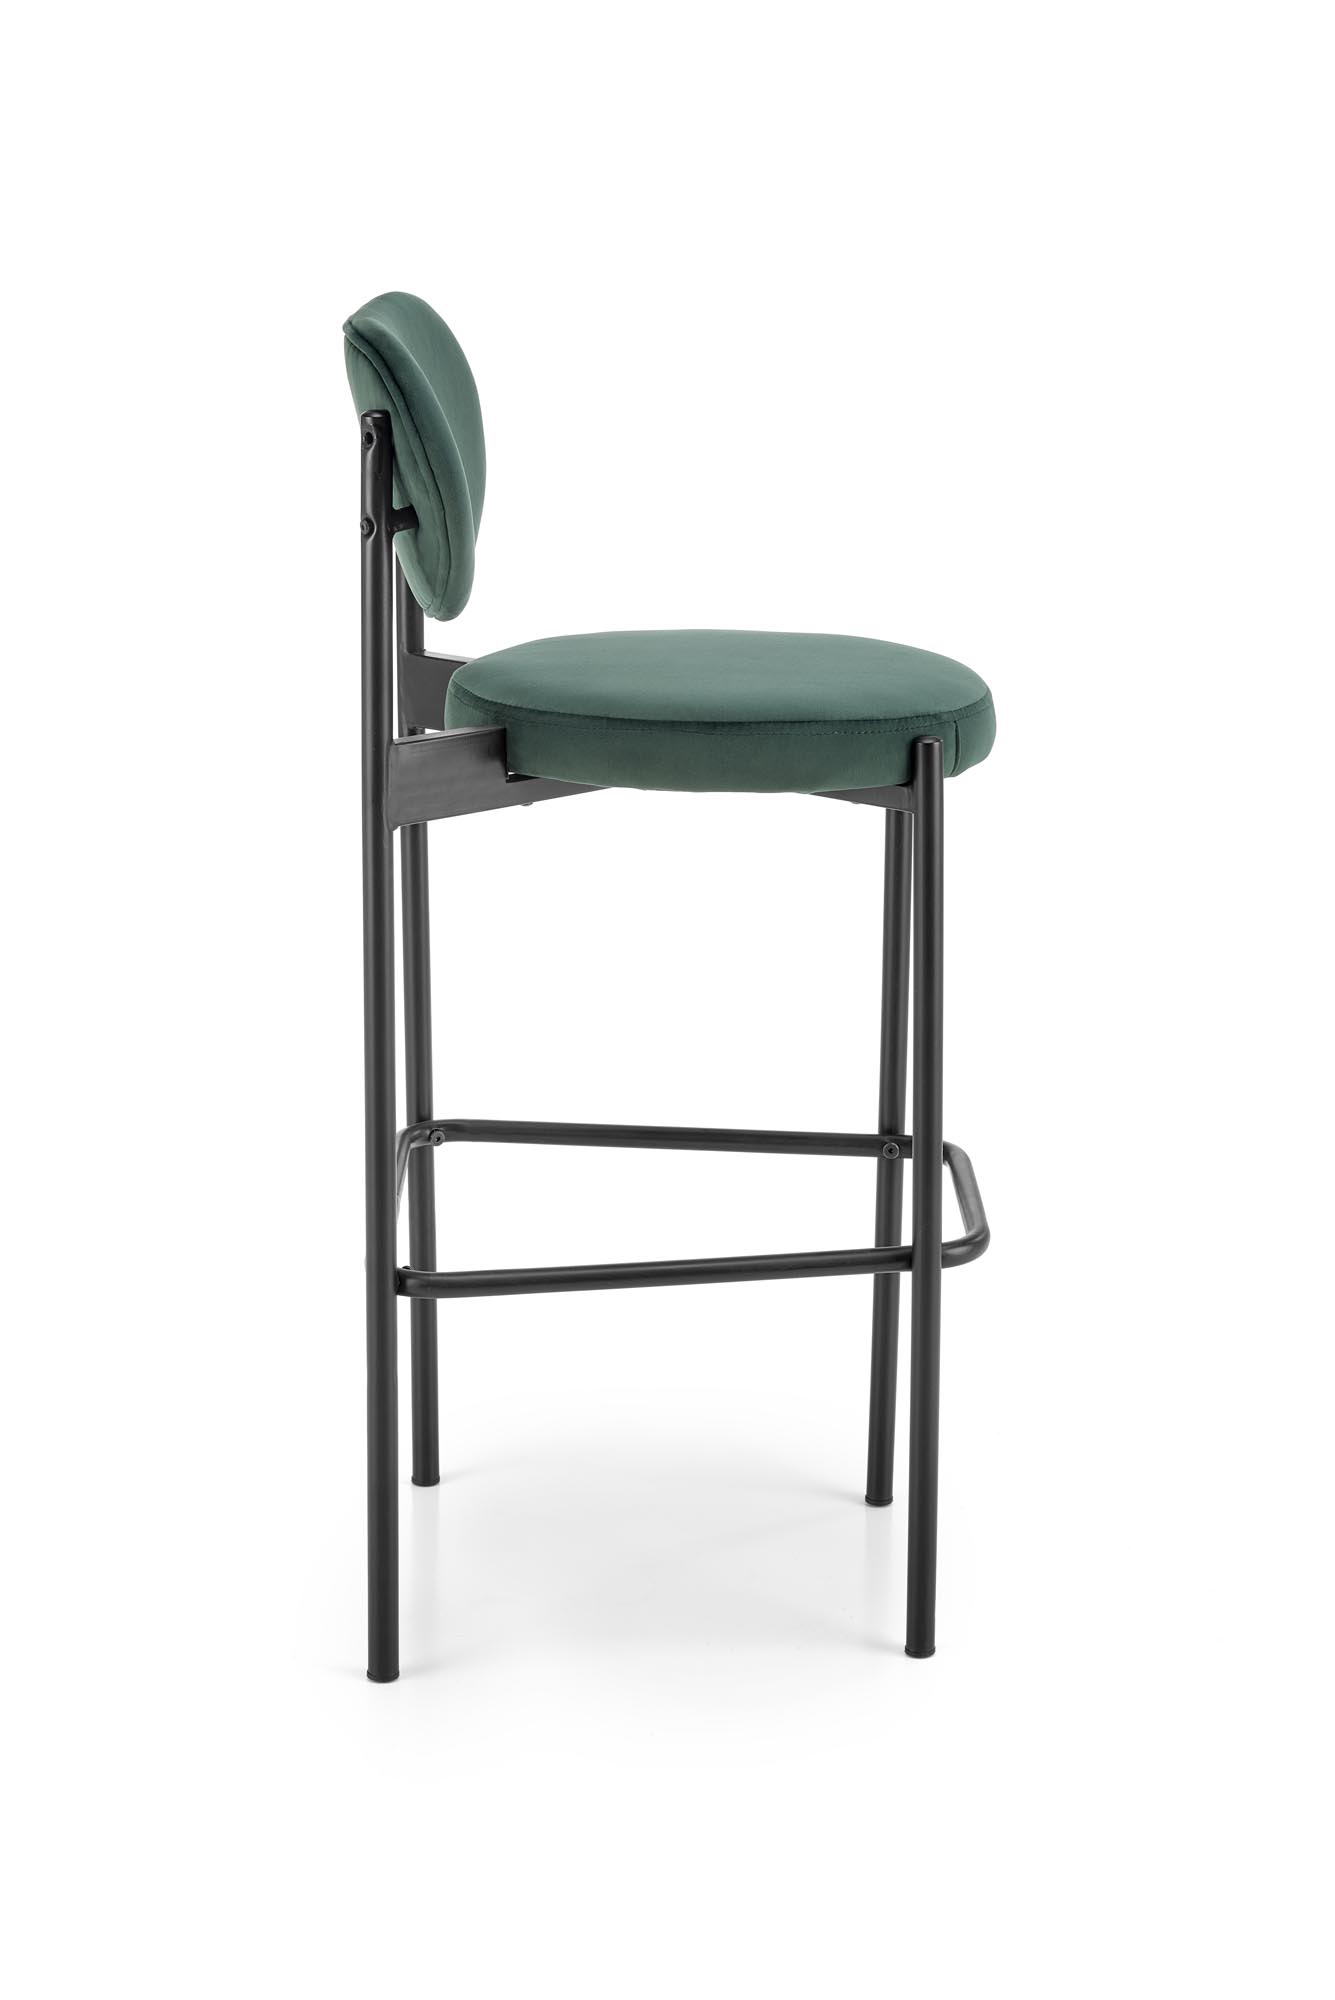 H108 Barová stolička tmavý Zelený Barová stolička čalúnená h108 - tmavá zelená